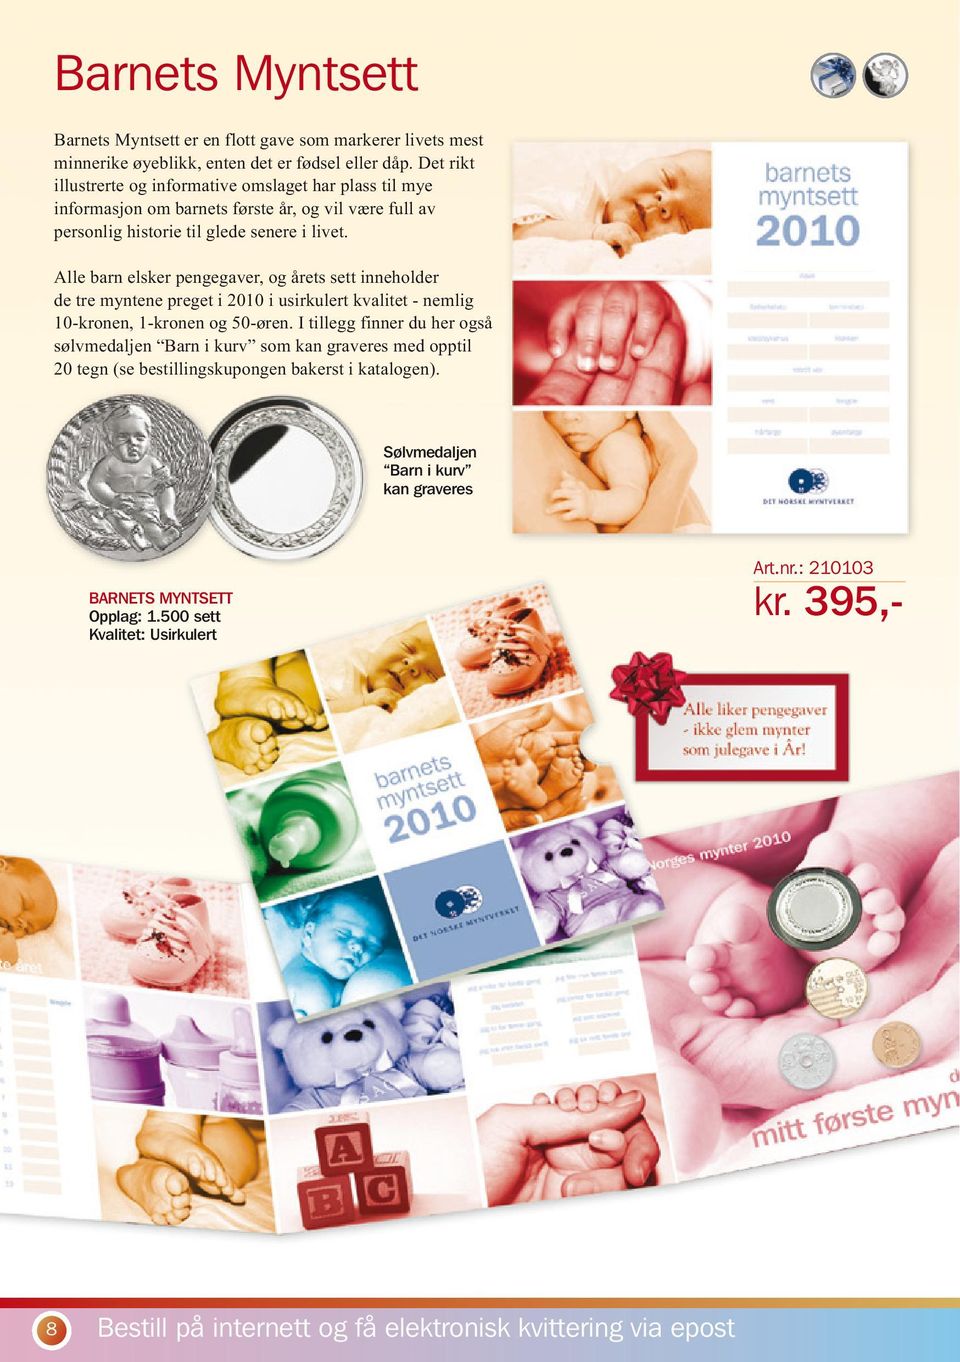 Alle barn elsker pengegaver, og årets sett inneholder de tre myntene preget i 2010 i usirkulert kvalitet - nemlig 10-kronen, 1-kronen og 50-øren.